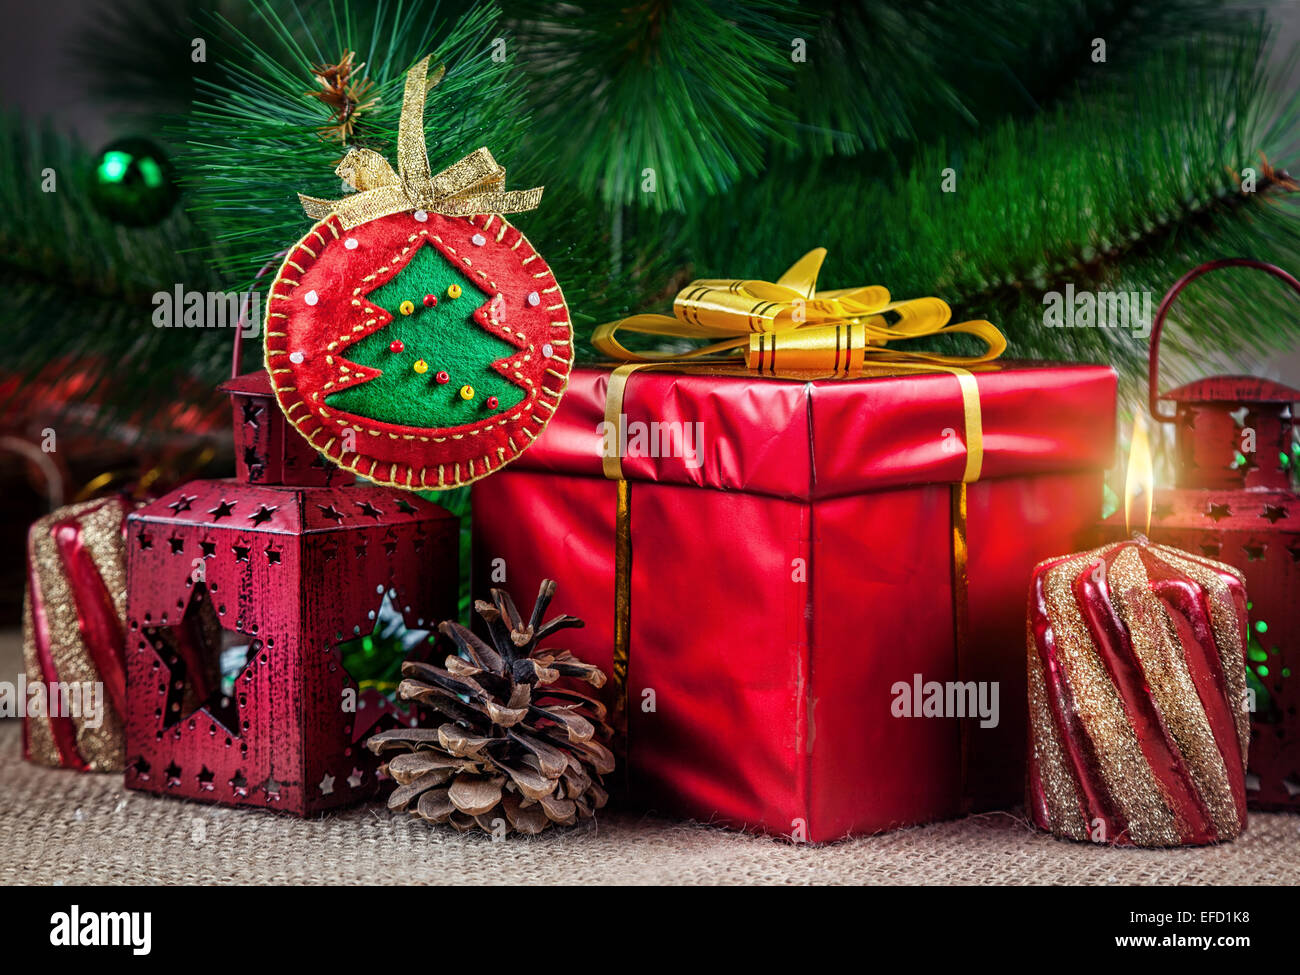 Handgemachte Weihnachtskugel aus Filz in der Nähe der Weihnachtsbaum, rotes Feld, Laterne, Kegel und Kerze Stockfoto